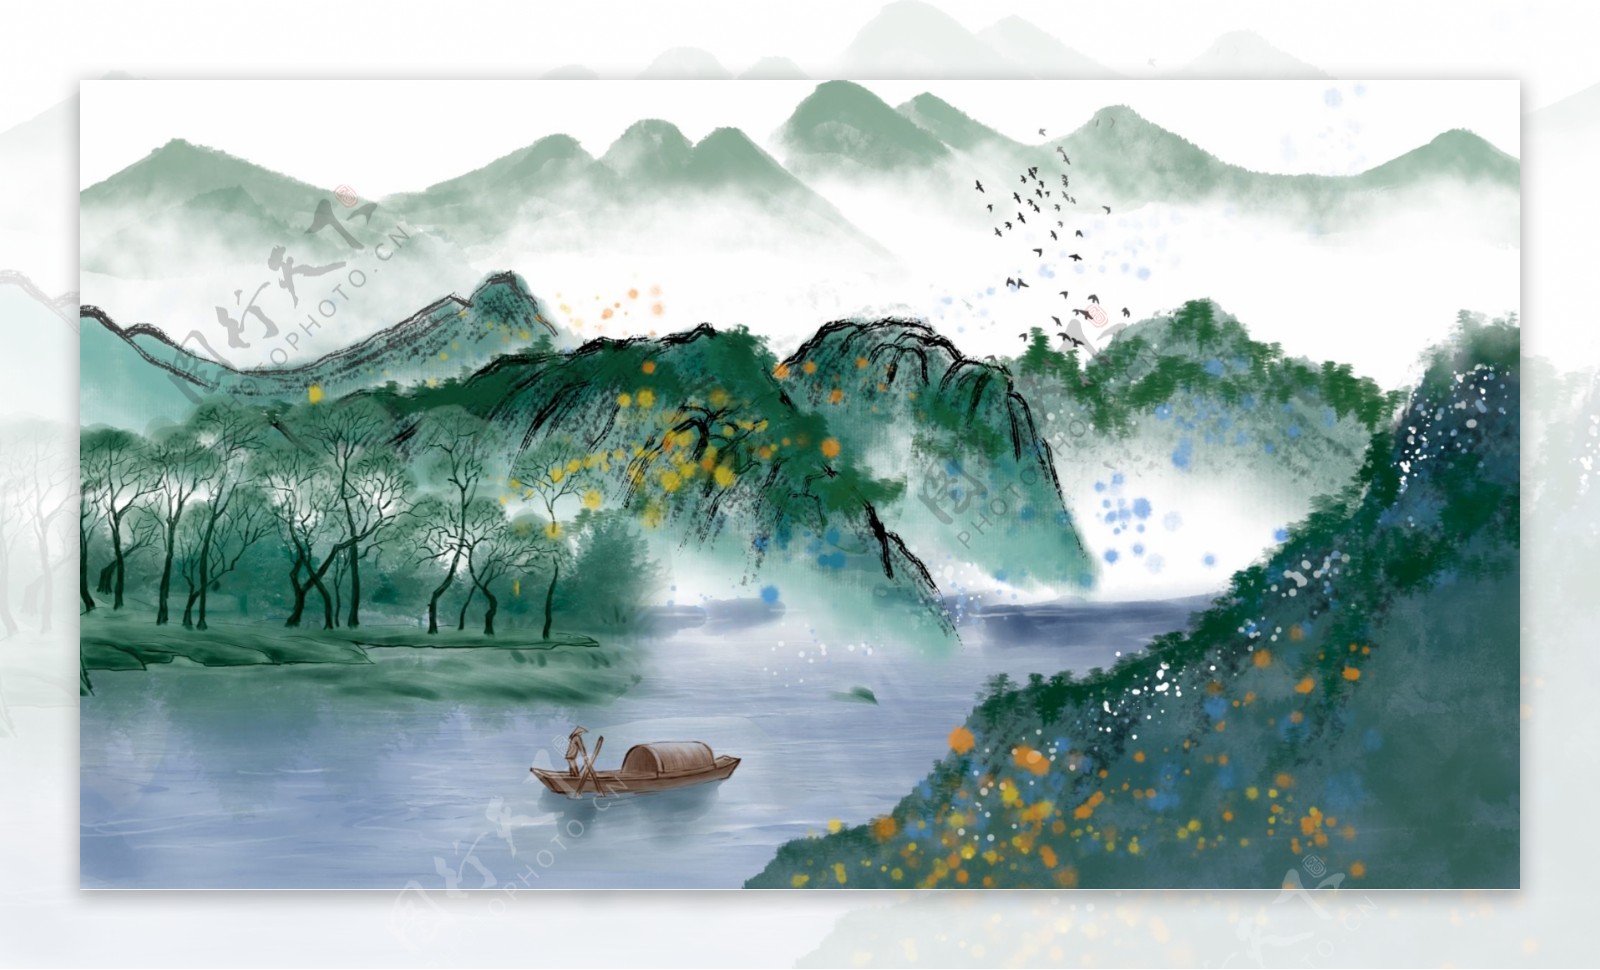 复古中国水墨画风景画水彩画插画